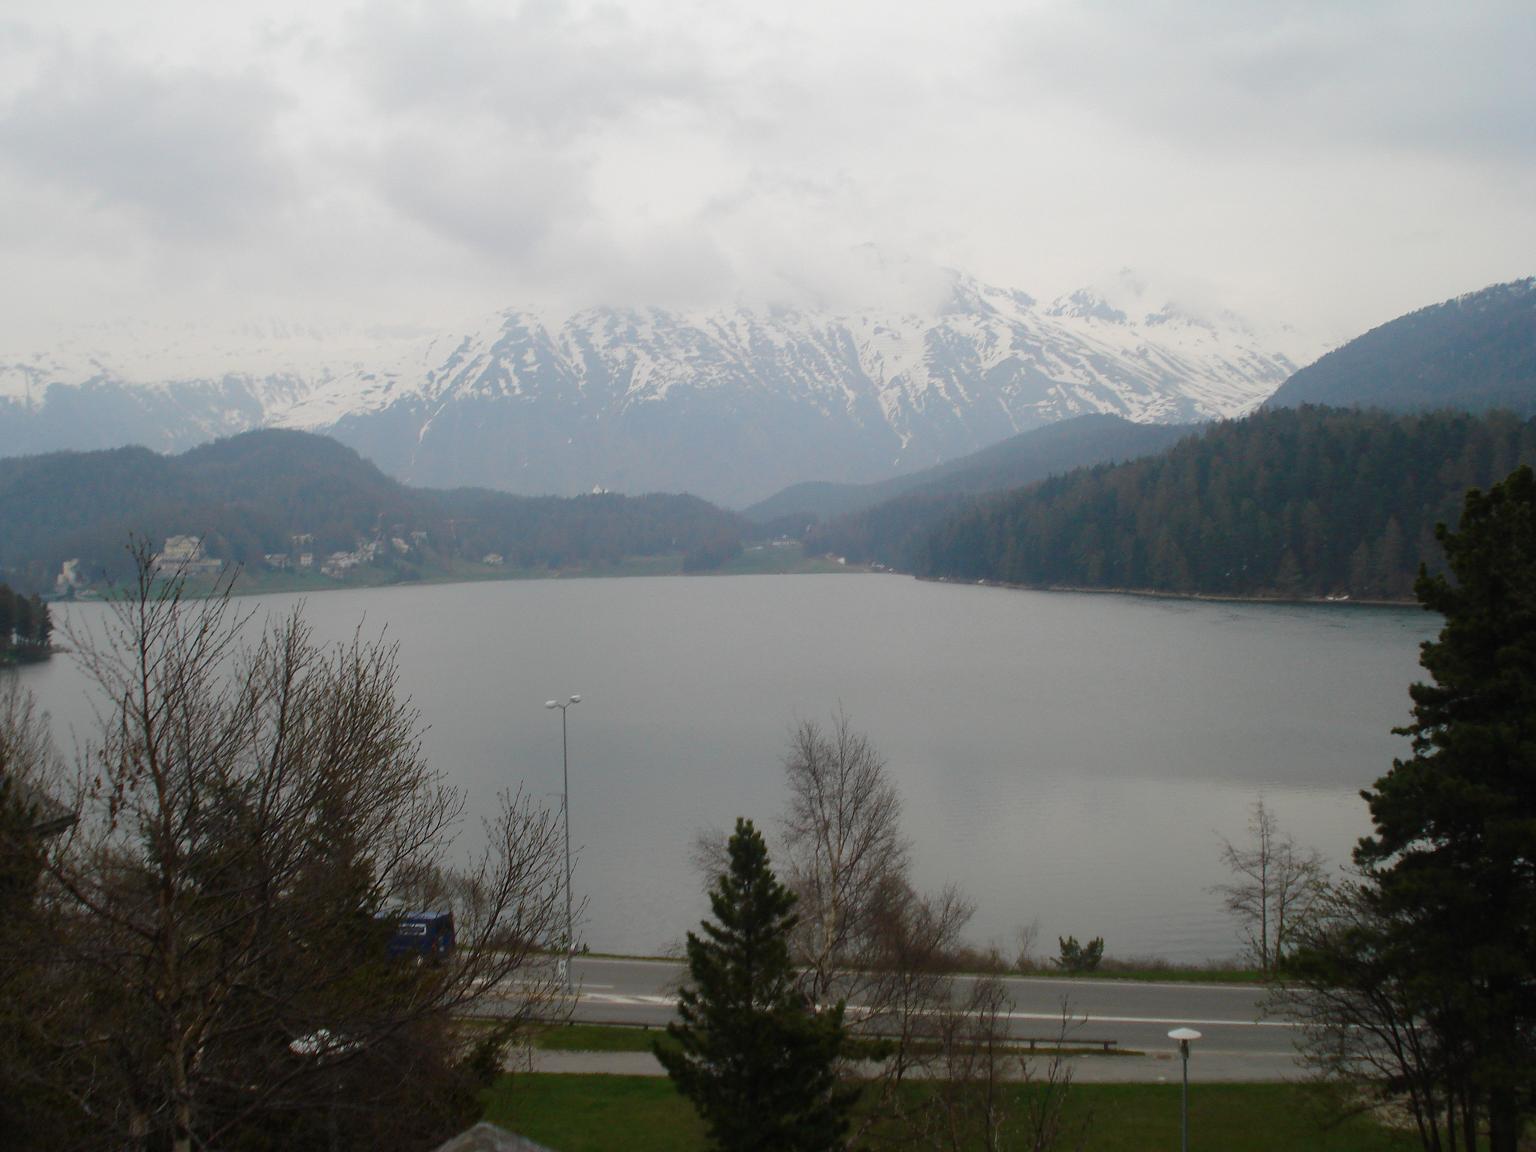 St.Moritz ski resort, гид Швейцария, гид в Цюрихе, гид в Женеве